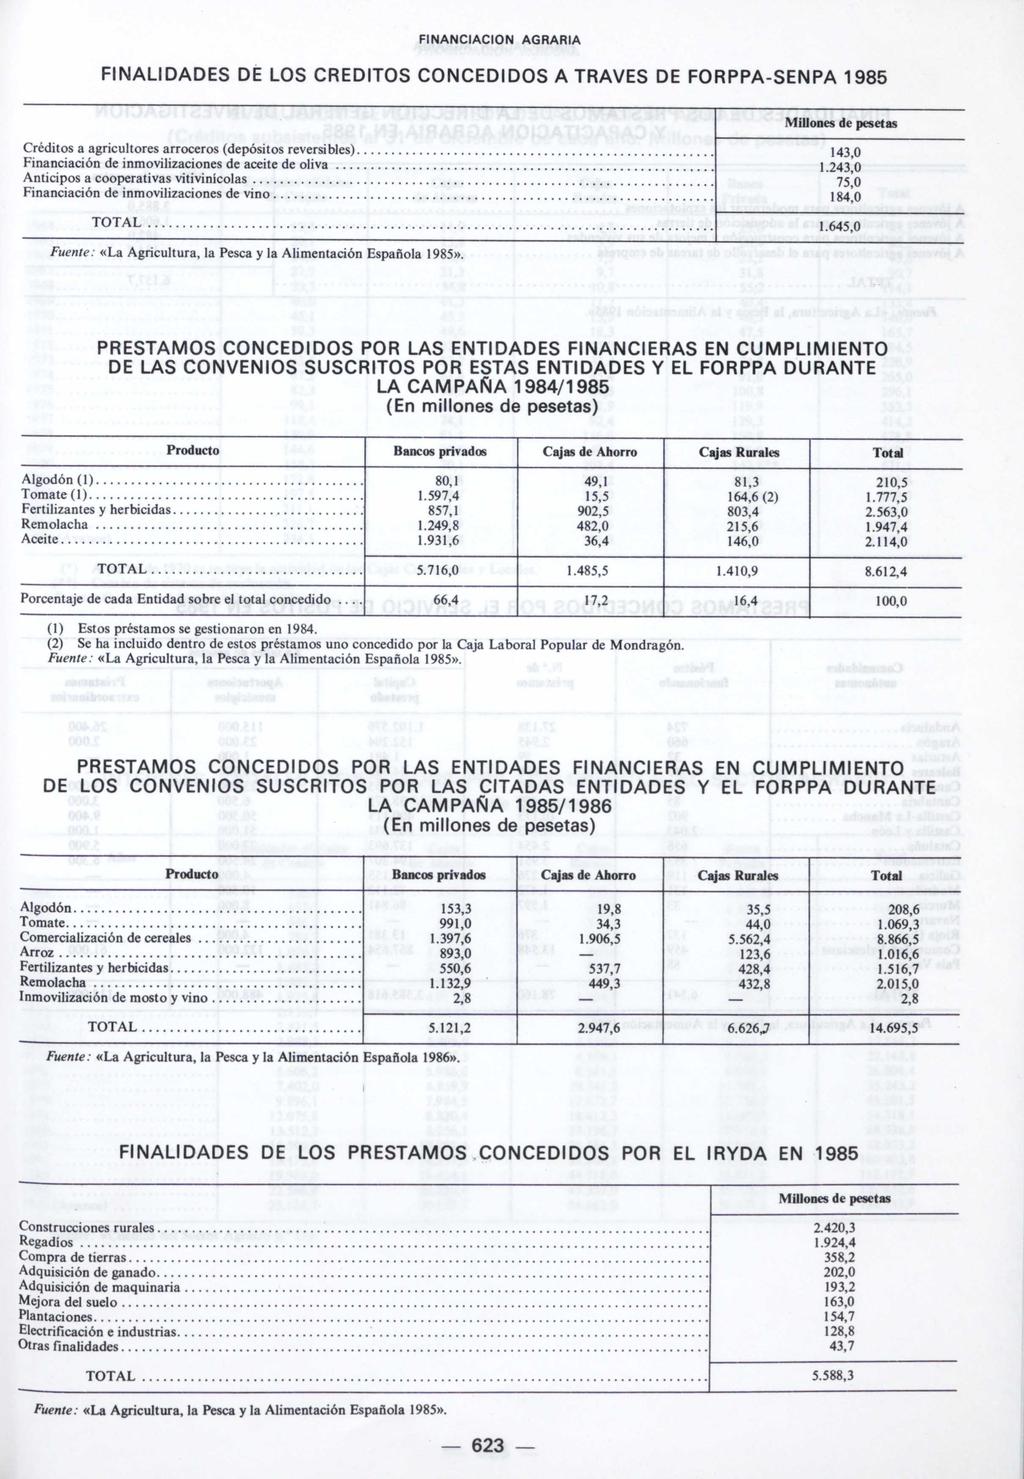 FINALIDADES DE LOS CREDITOS CONCEDIDOS A TRAVES DE FORPPA-SENPA 1985 Créditos a agricultores arroceros (depósitos reversibles) 143,0 Financiación de inmovilizaciones de aceite de oliva 1.